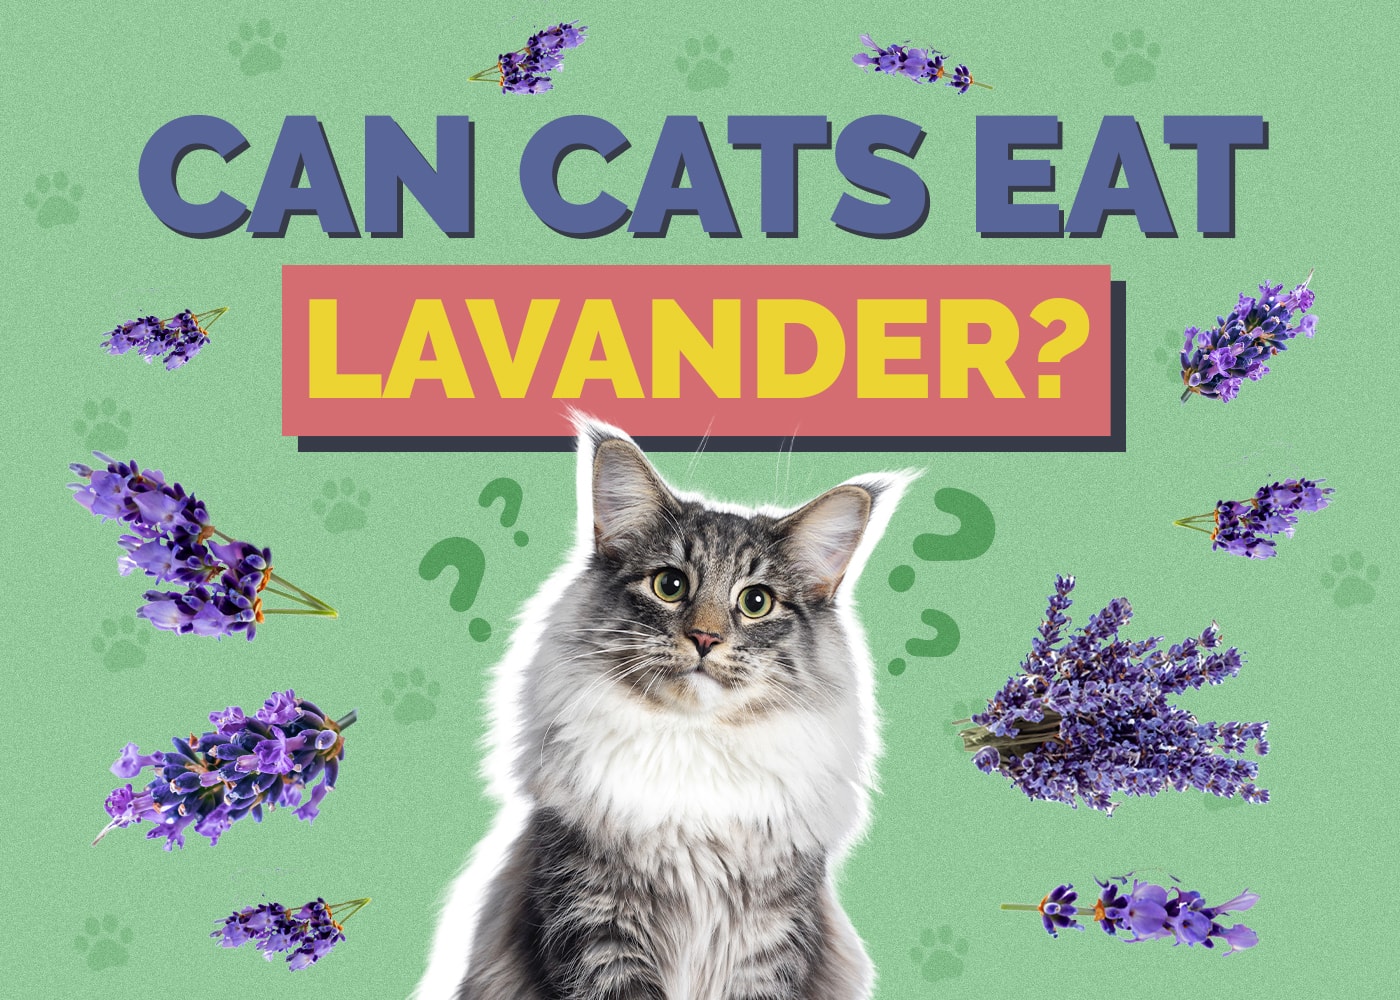 Can Cats Eat lavander